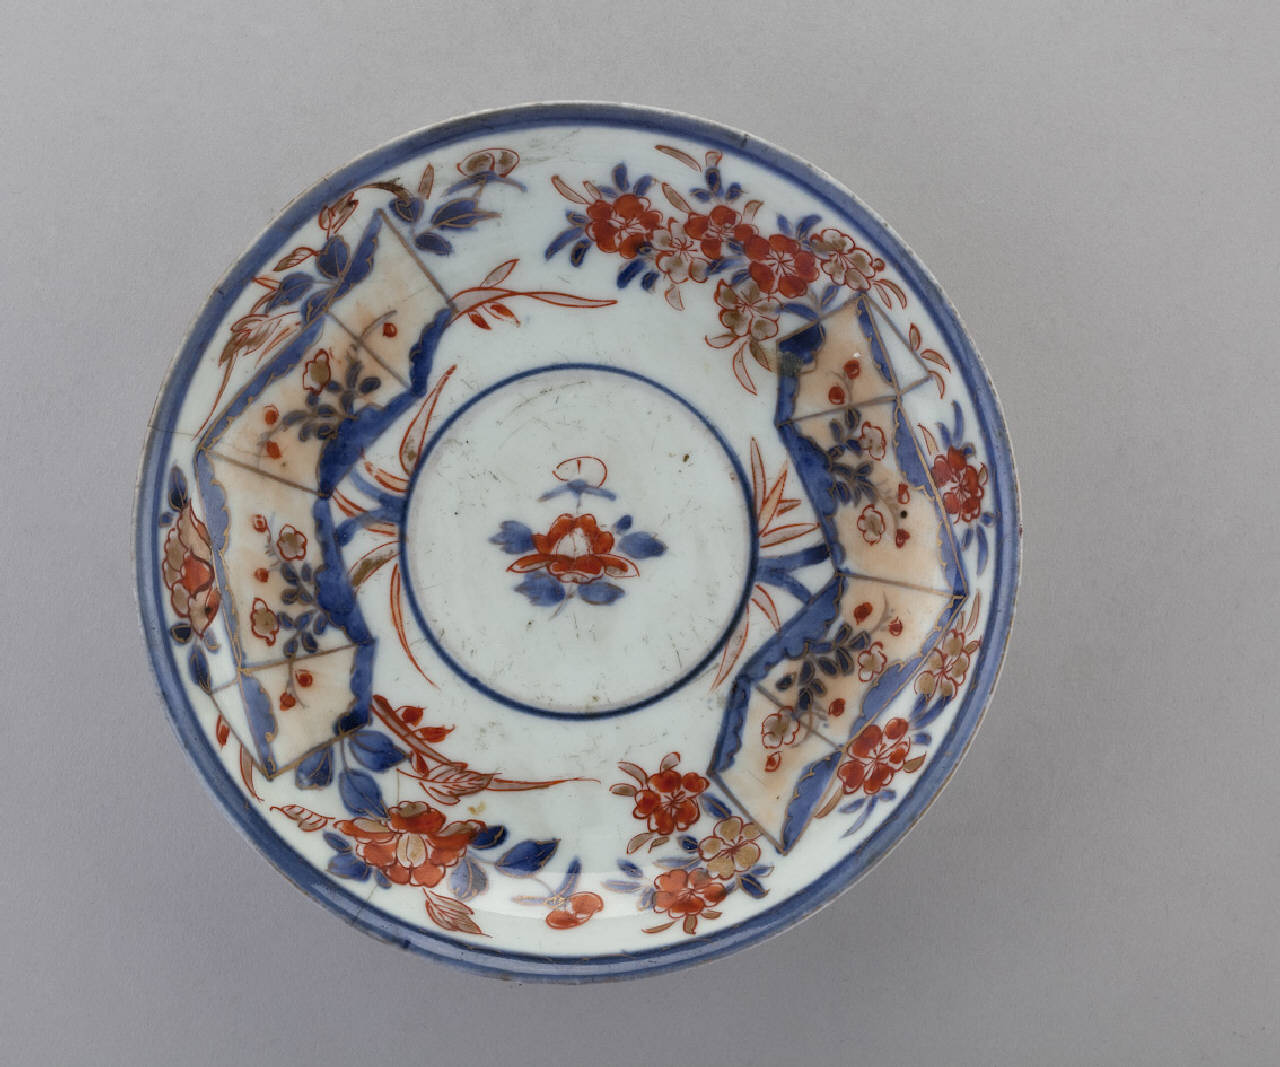 motivi decorativi floreali (piattino) - manifattura giapponese (prima metà sec. XVIII)